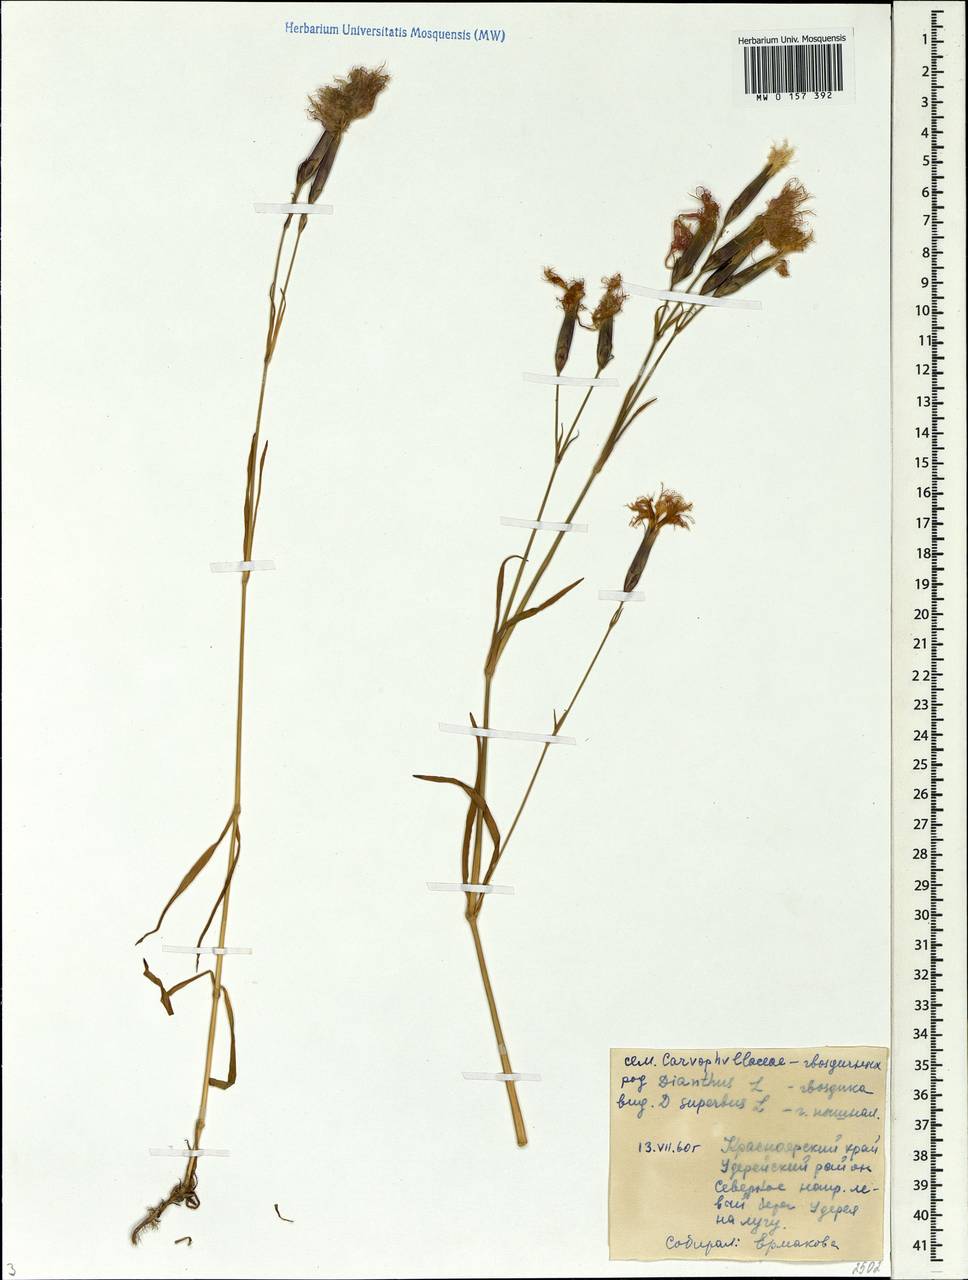 Dianthus superbus, Siberia, Central Siberia (S3) (Russia)